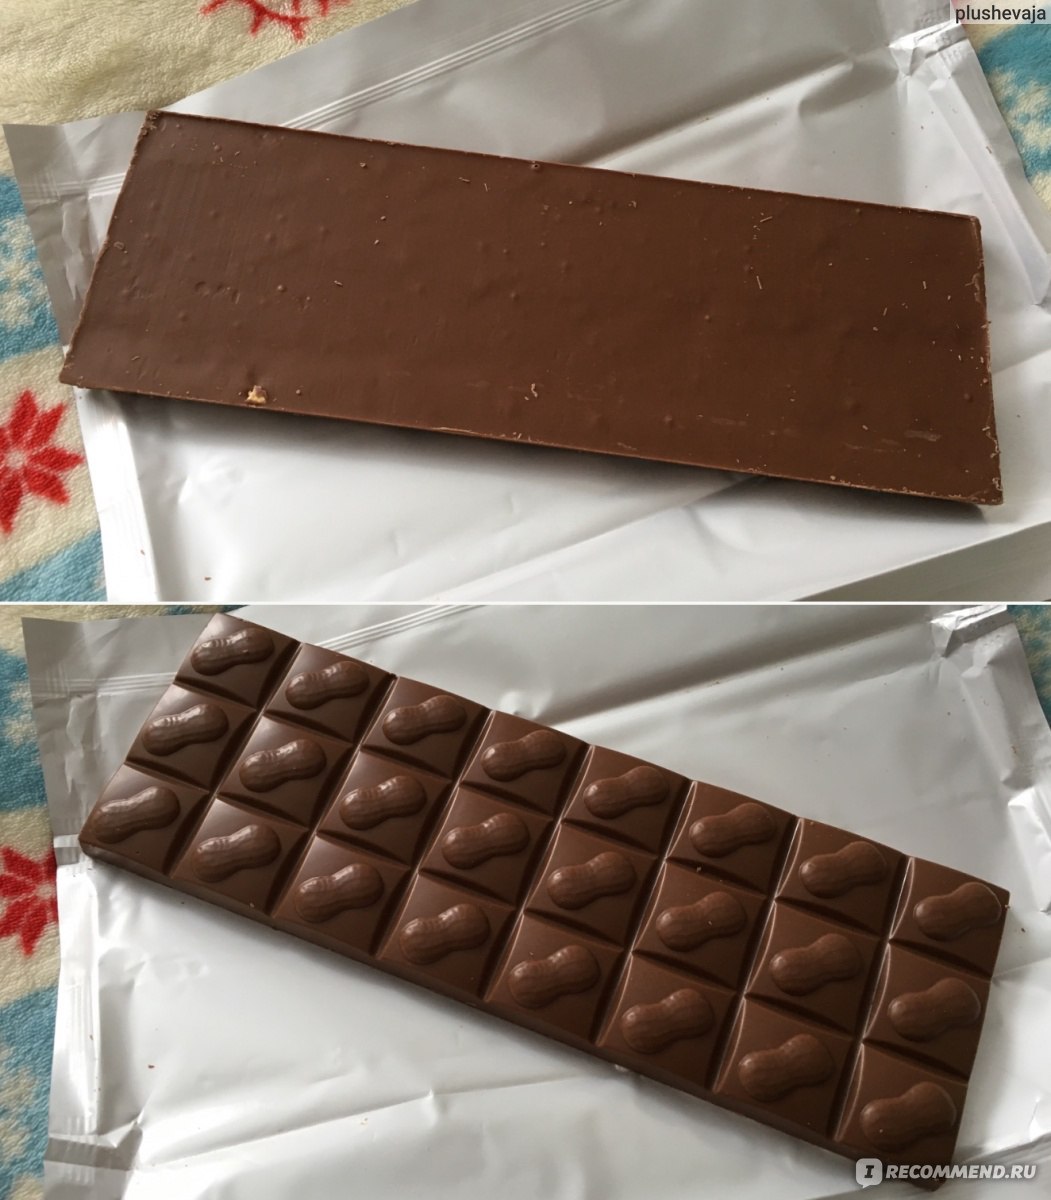 Домашняя плитка шоколада. Плитка шоколада. Плиточный шоколад. Шоколадная плитка. Плиточные шоколадки.